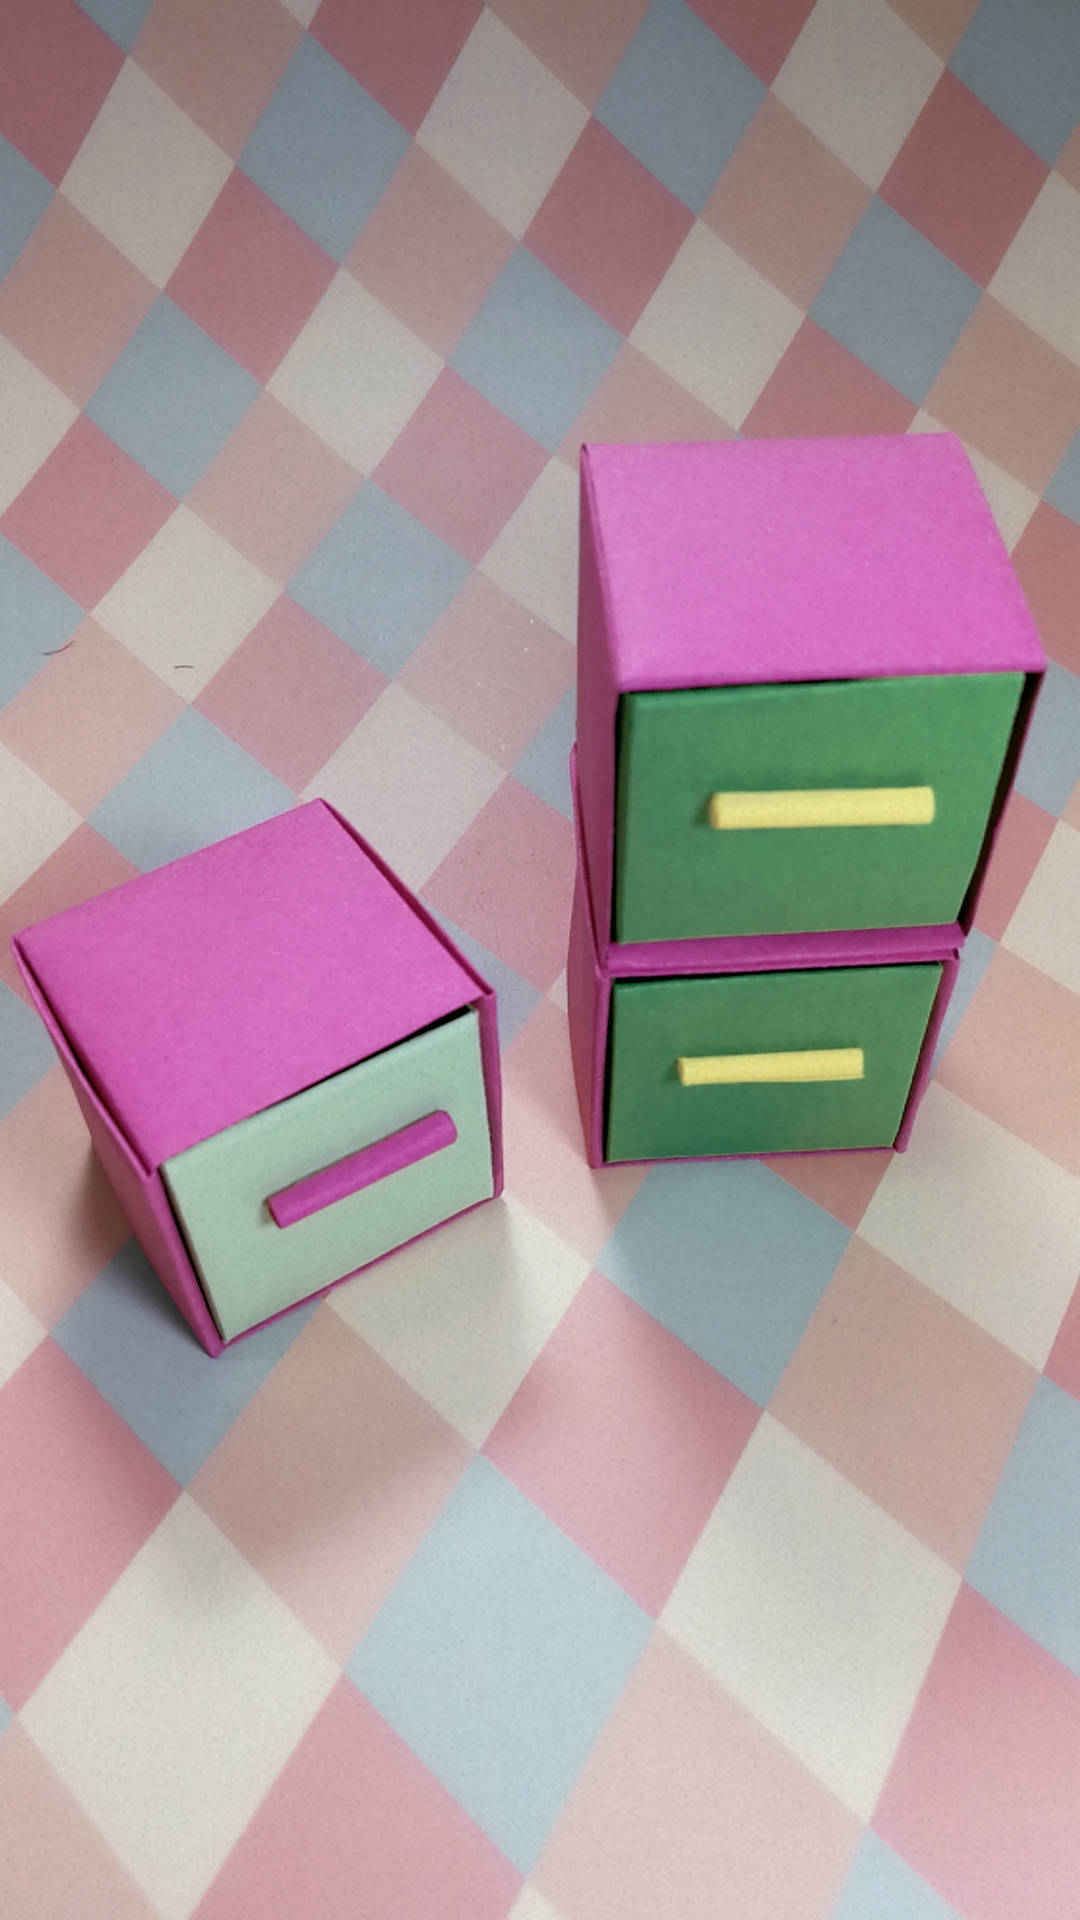 折纸大全,亲子折纸美观实用的多层抽屉收纳盒步骤详细教程图解